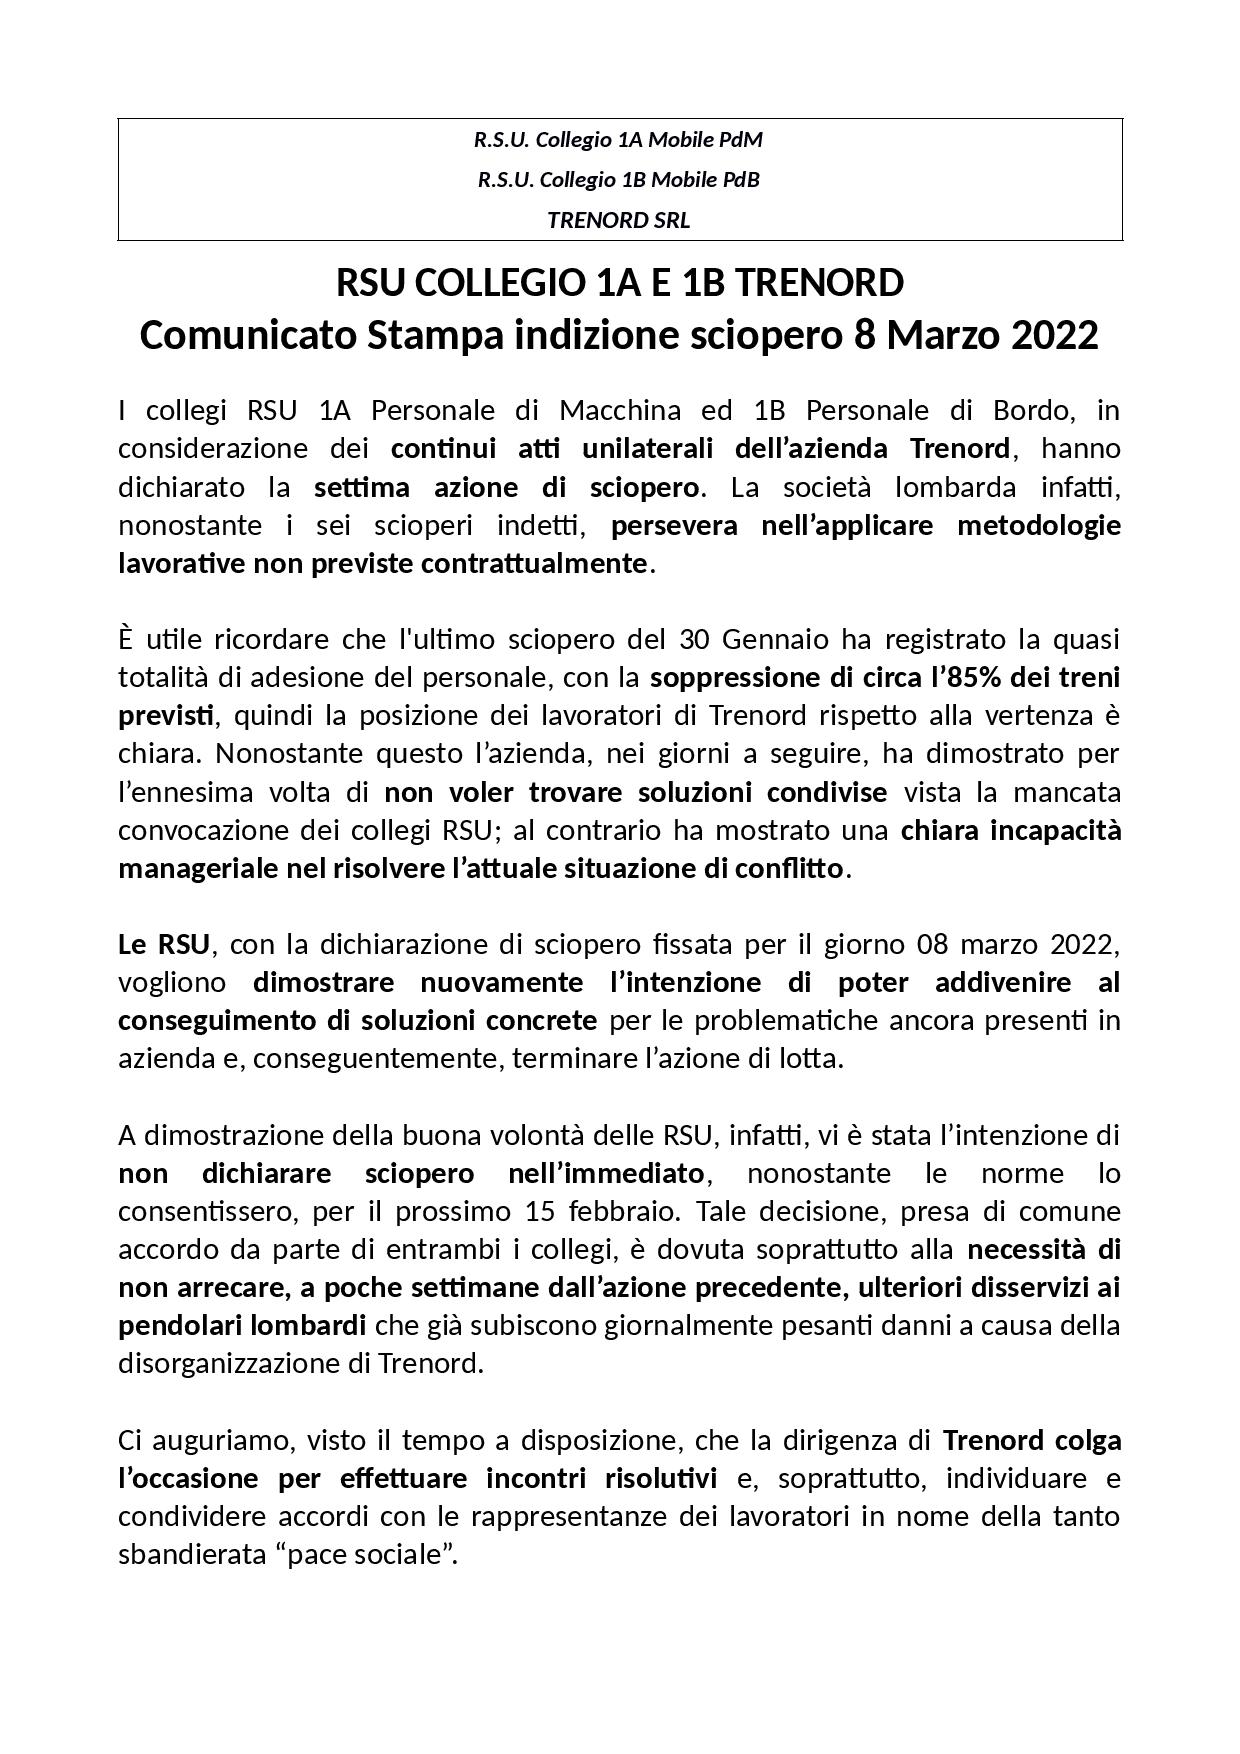 Trenord Comunicato RSU Mobile Sciopero 8 marzo 2022 page 001